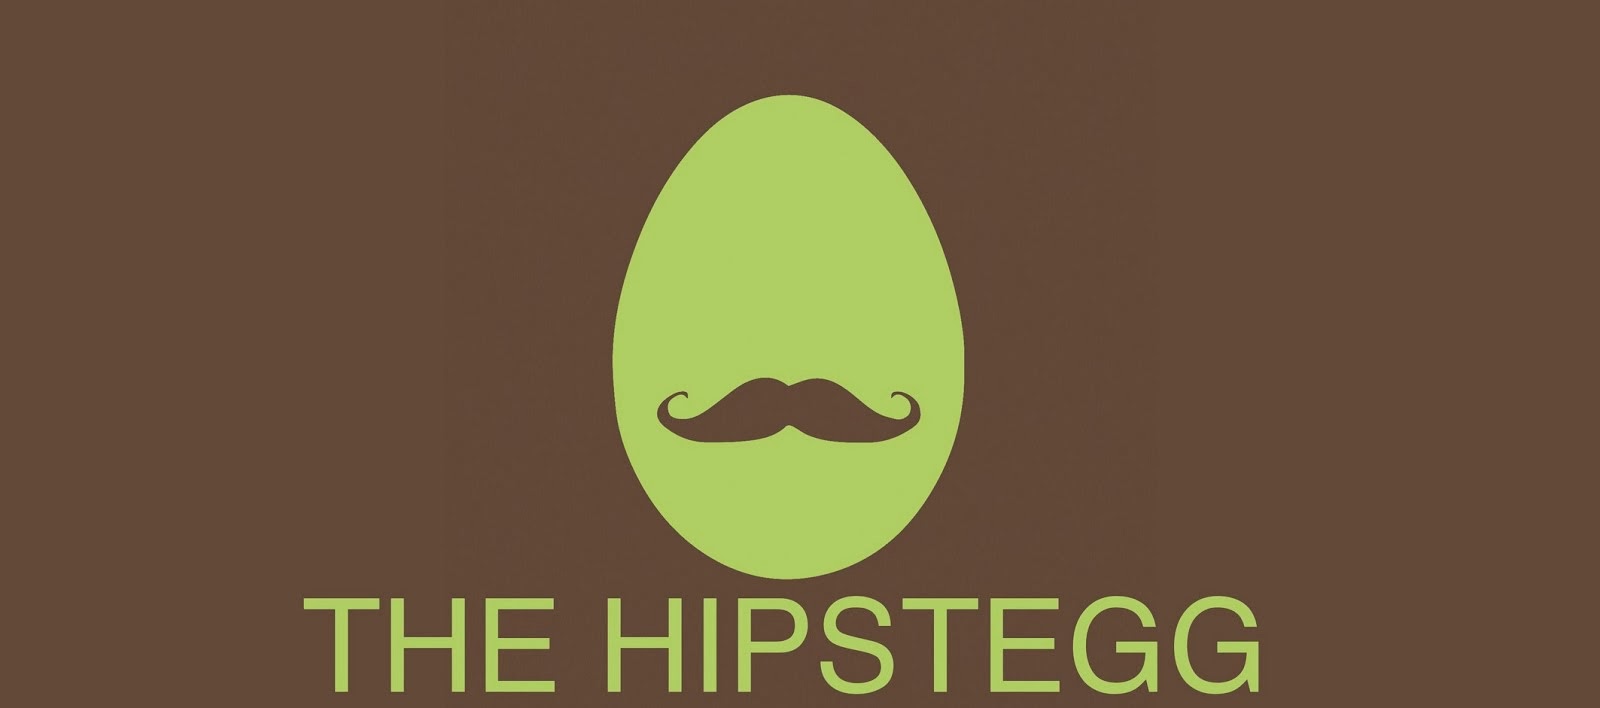 The Hipstegg's Blog